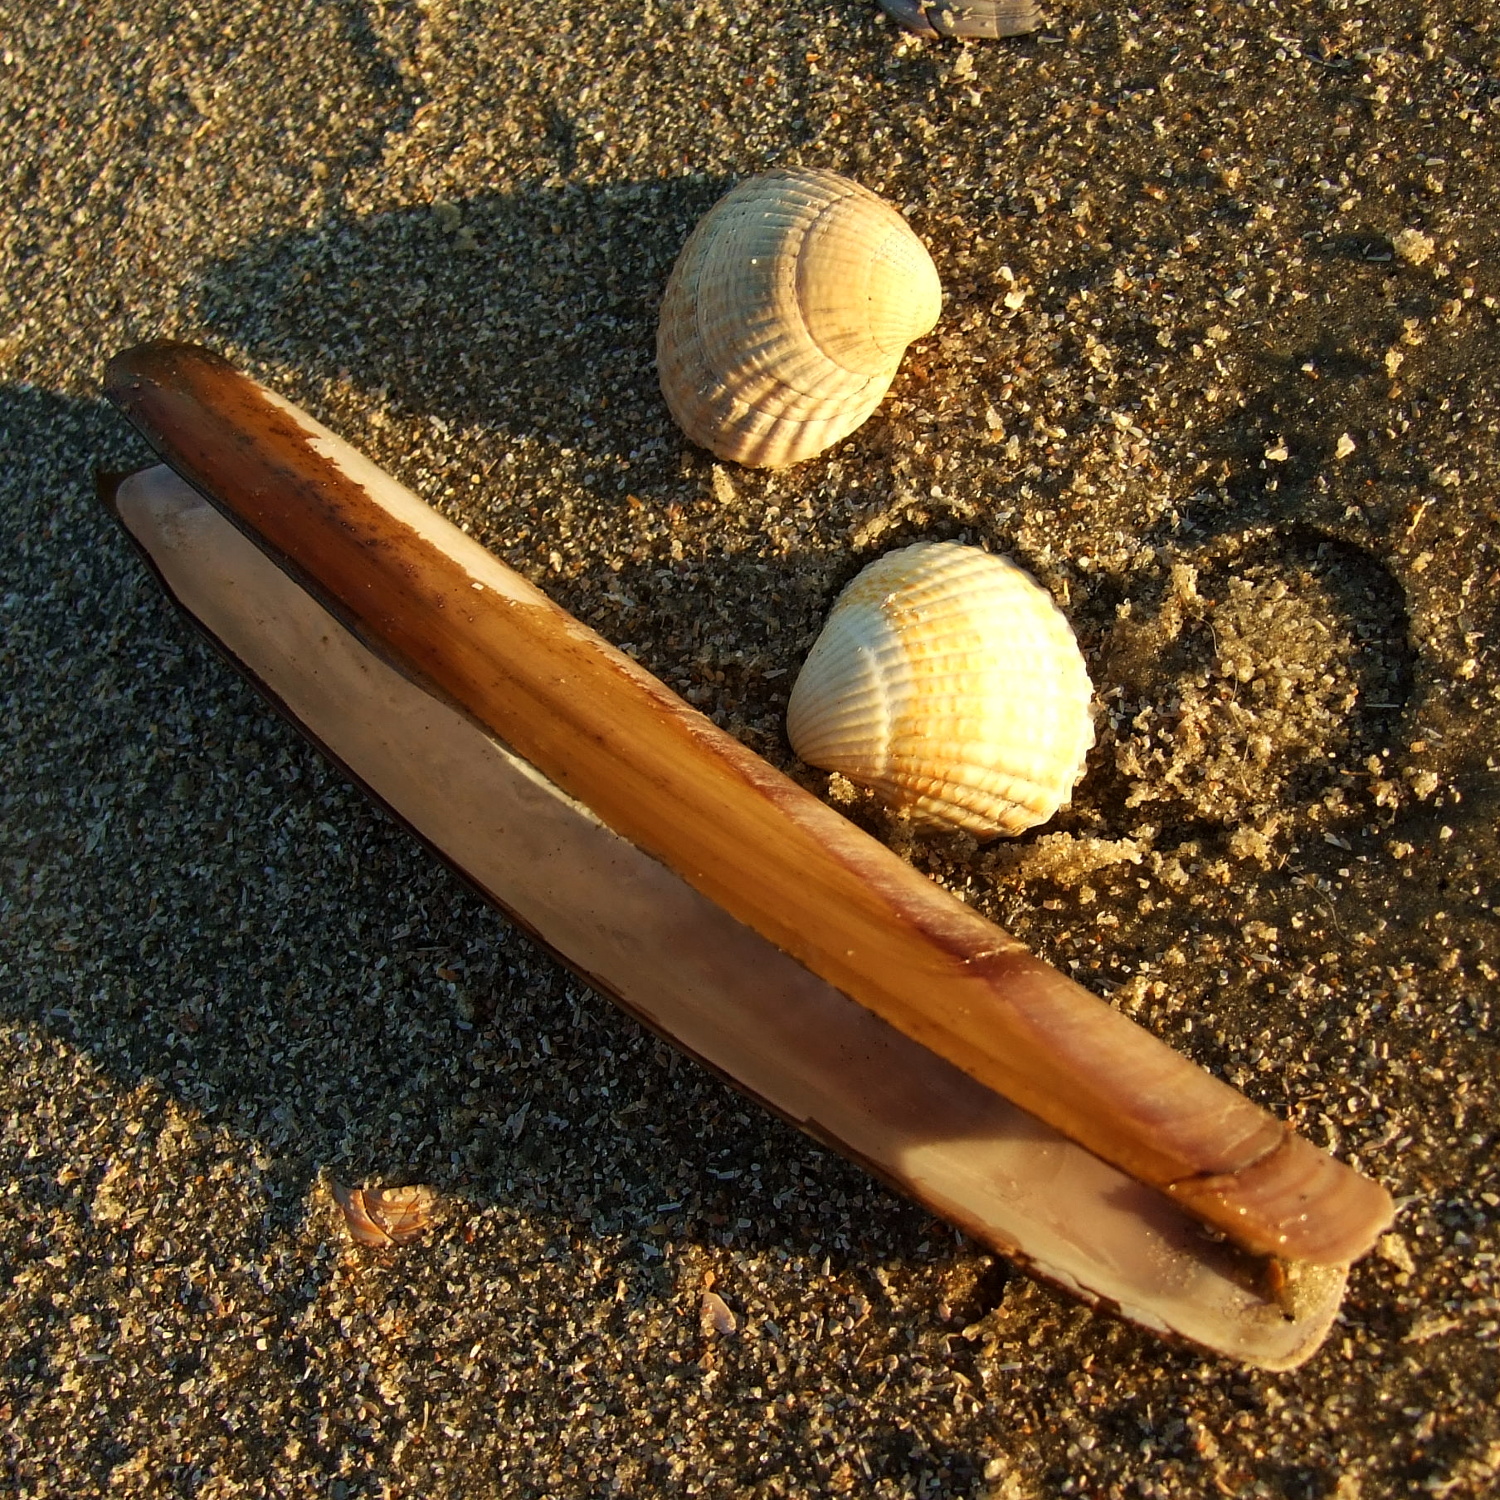 na plażach leży mnóstwo muszli w różnych kształtach i rozmiarach